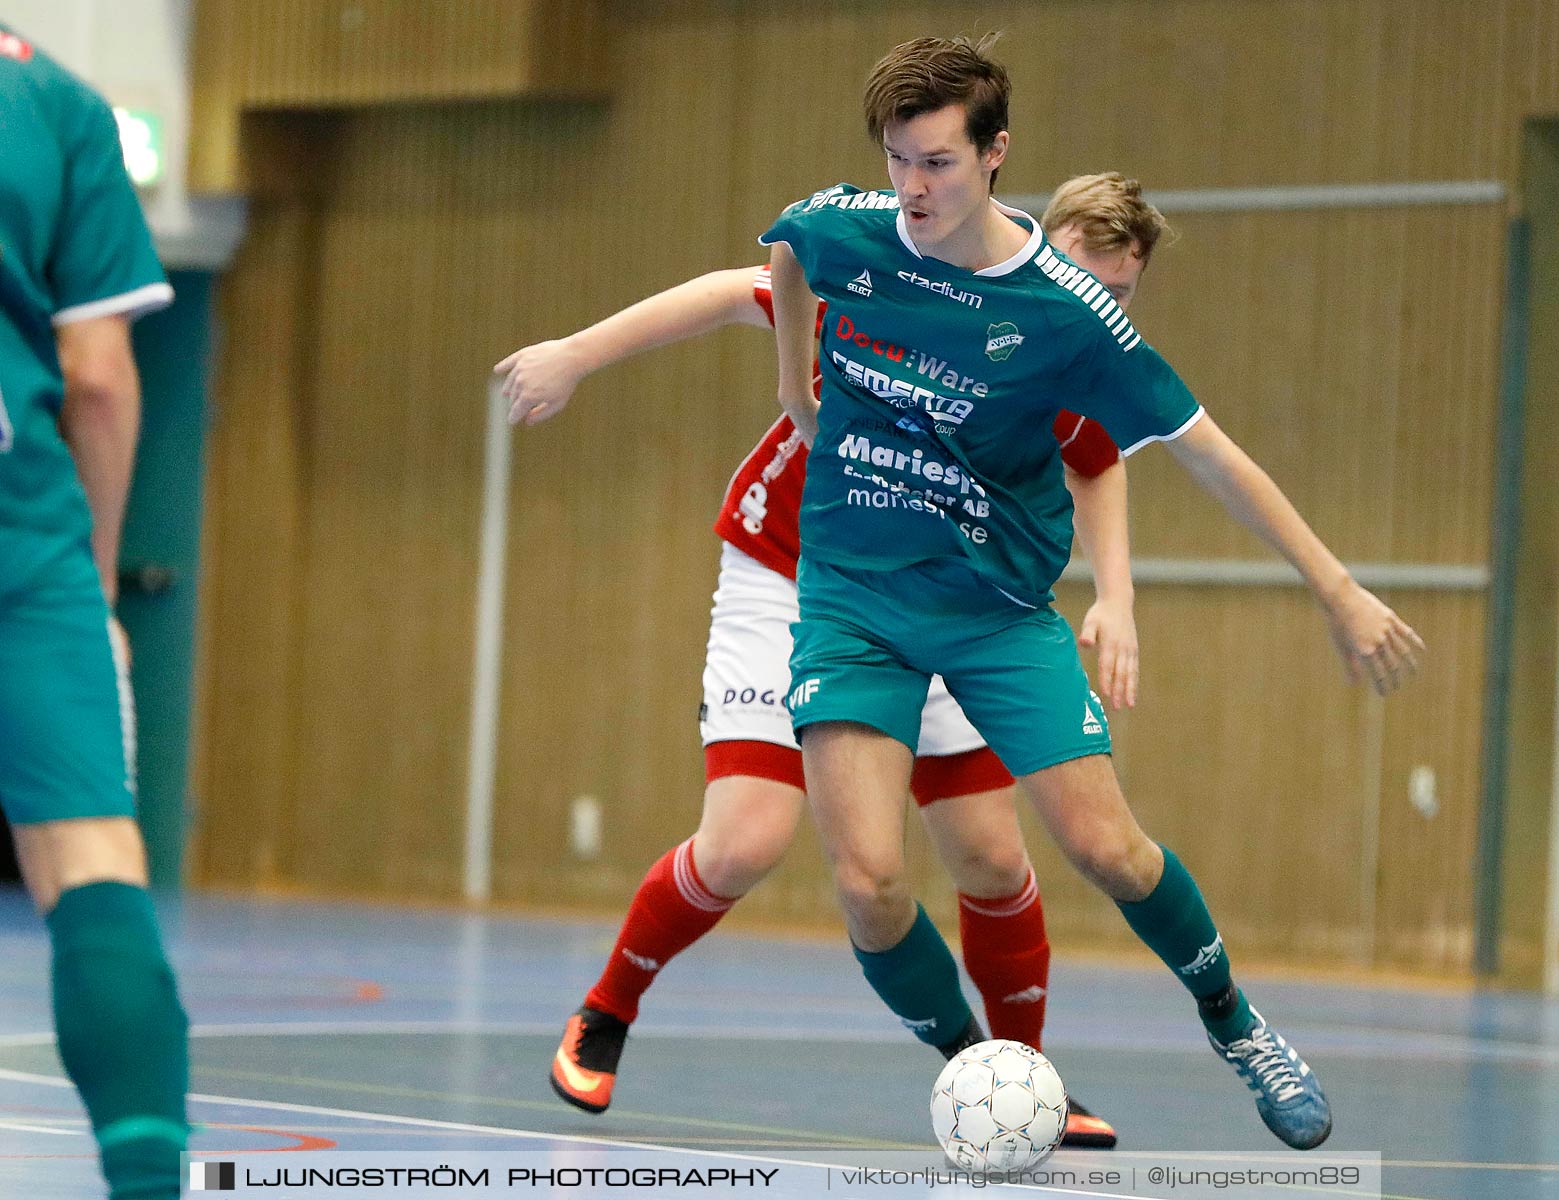 Skövde Futsalcup 2019 Herrar Vårgårda IK-Våmbs IF,herr,Arena Skövde,Skövde,Sverige,Futsal,,2019,227249